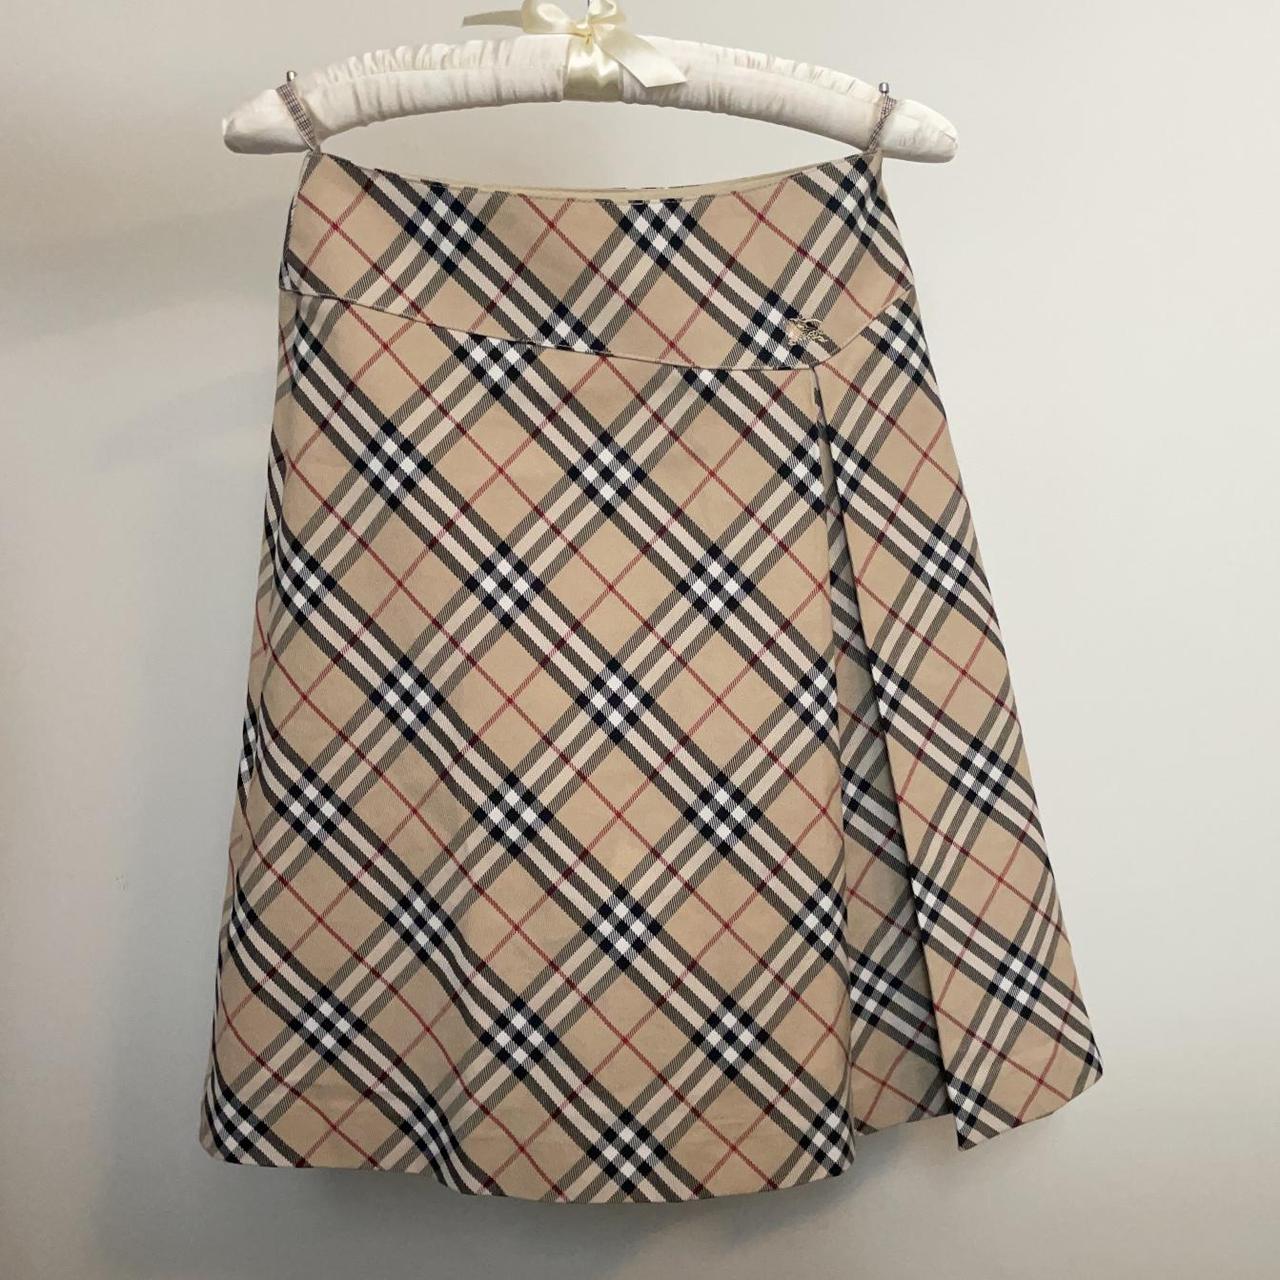 Product Image 2 - Iconic Burberry Nova Check Skirt